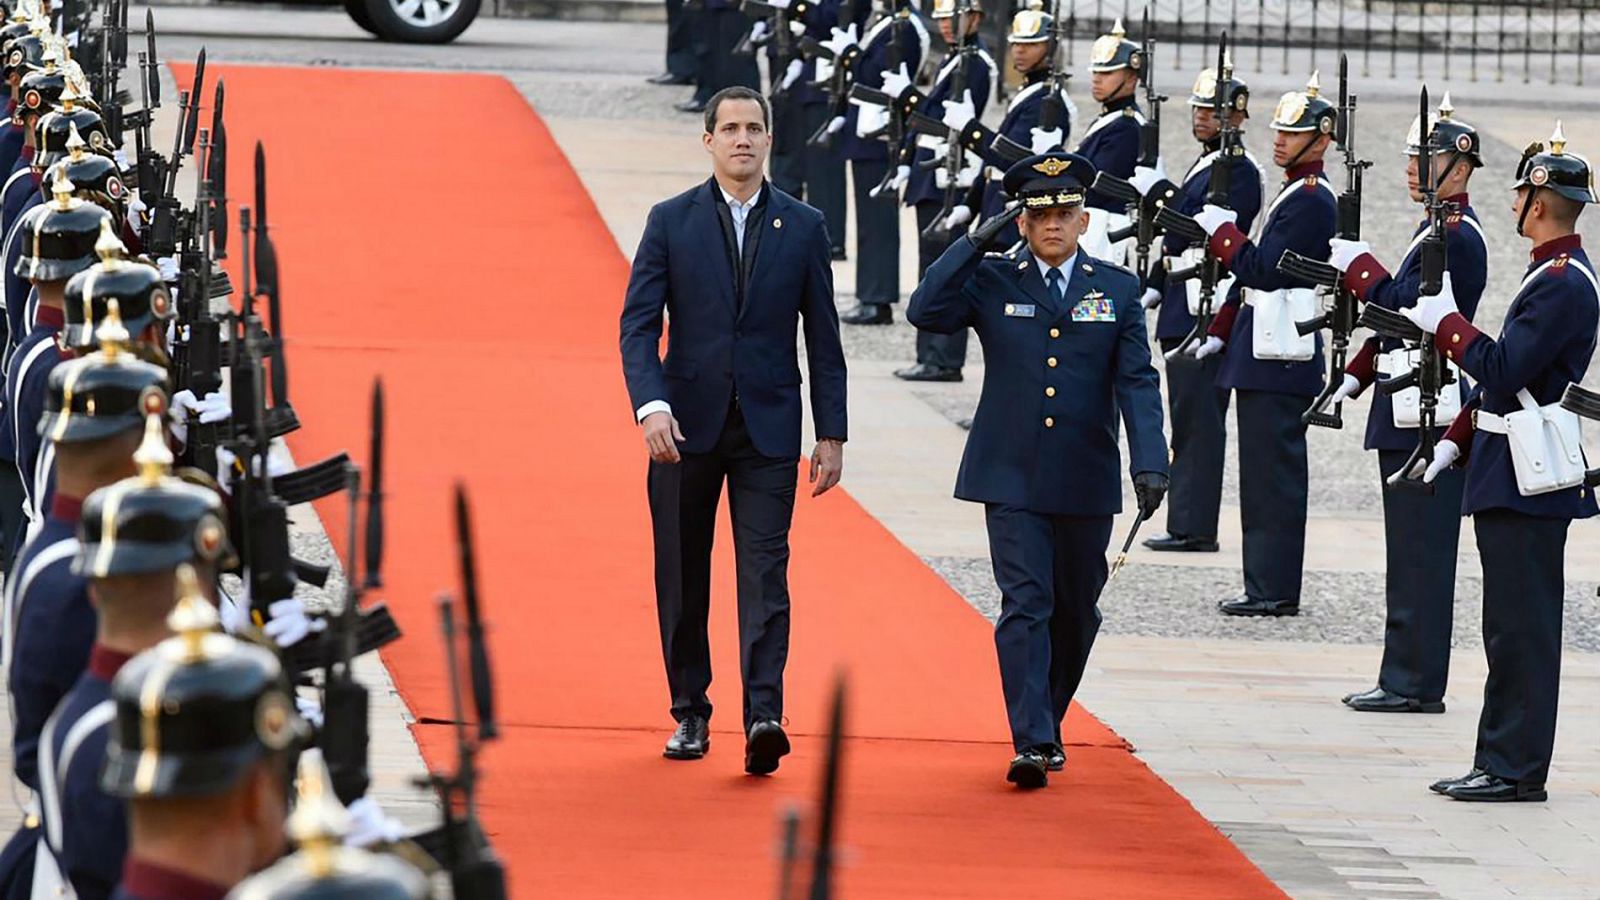 El presidente de la Asamblea Nacional de Venezuela, Juan Guaidó, llegó por sorpresa este domingo a Bogotá para reunirse con el presidente colombiano, Iván Duque, y asistir a la III Conferencia Ministerial Himisférica de Lucha contra el Terrorismo.